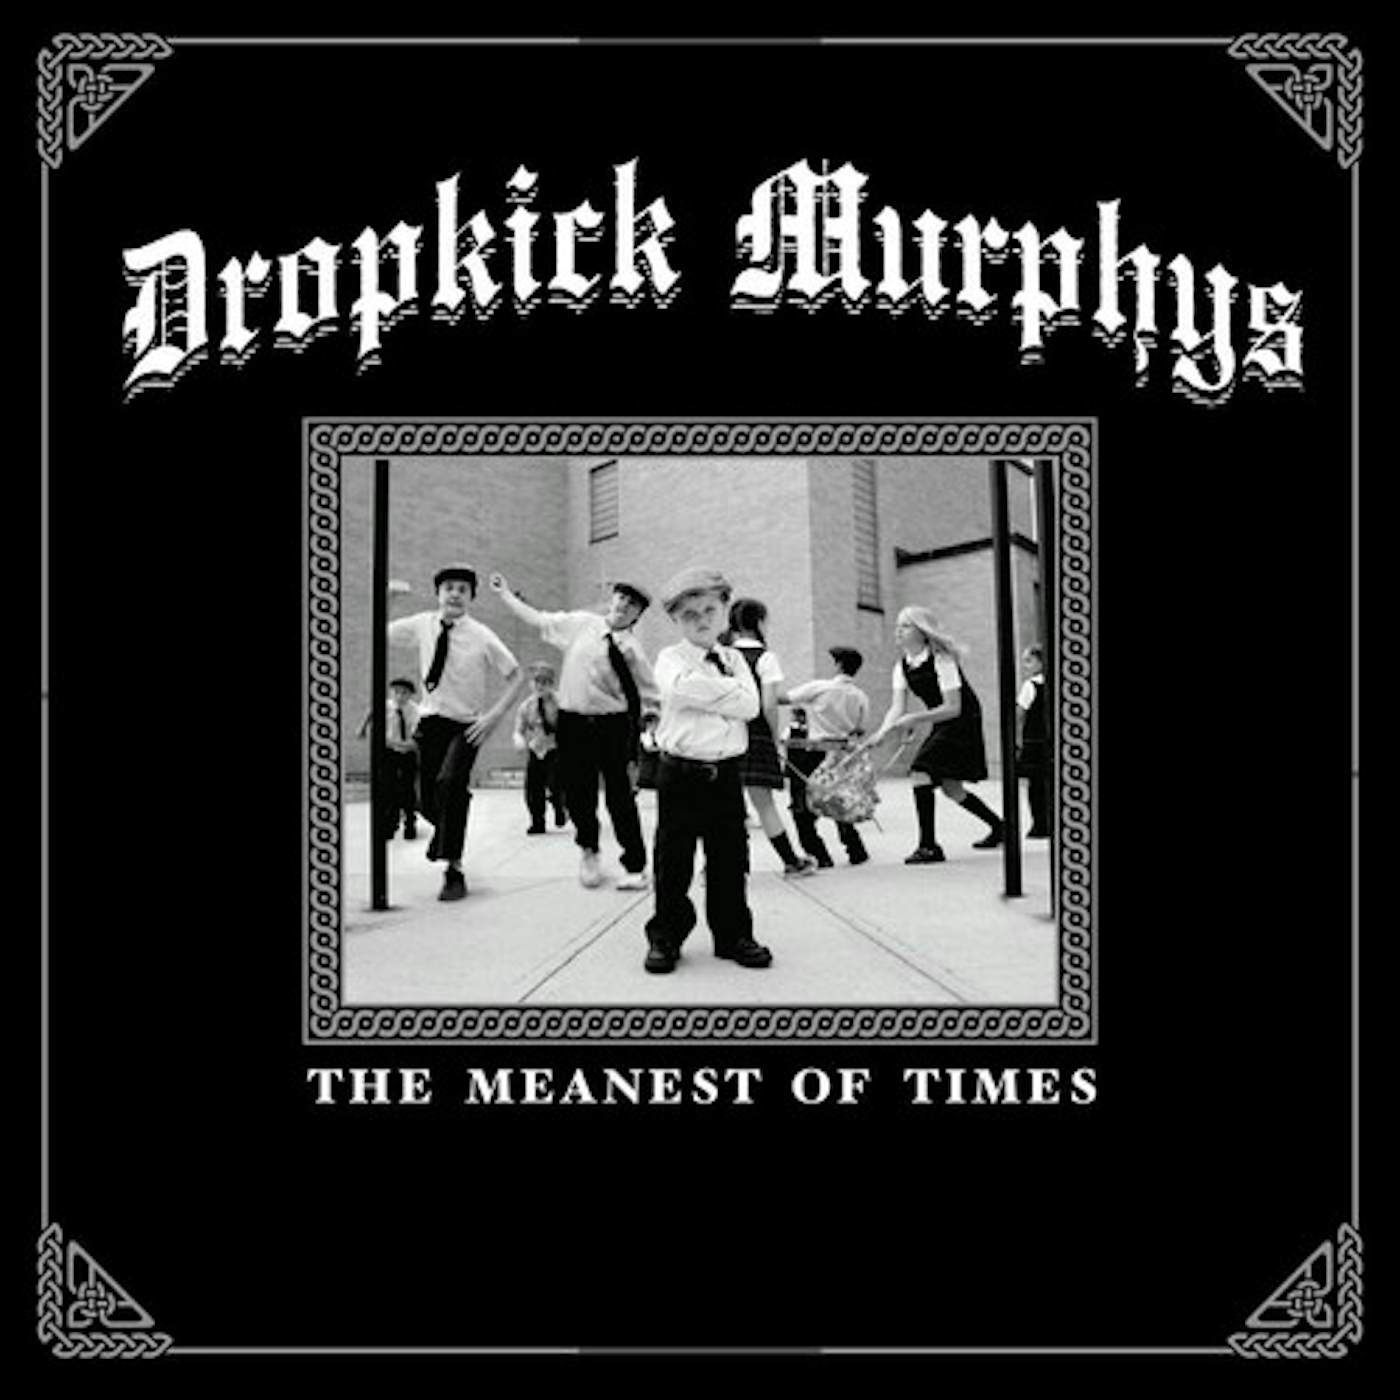 FREE shipping Boston Mass Dropkick Murphys Band Artwork shirt